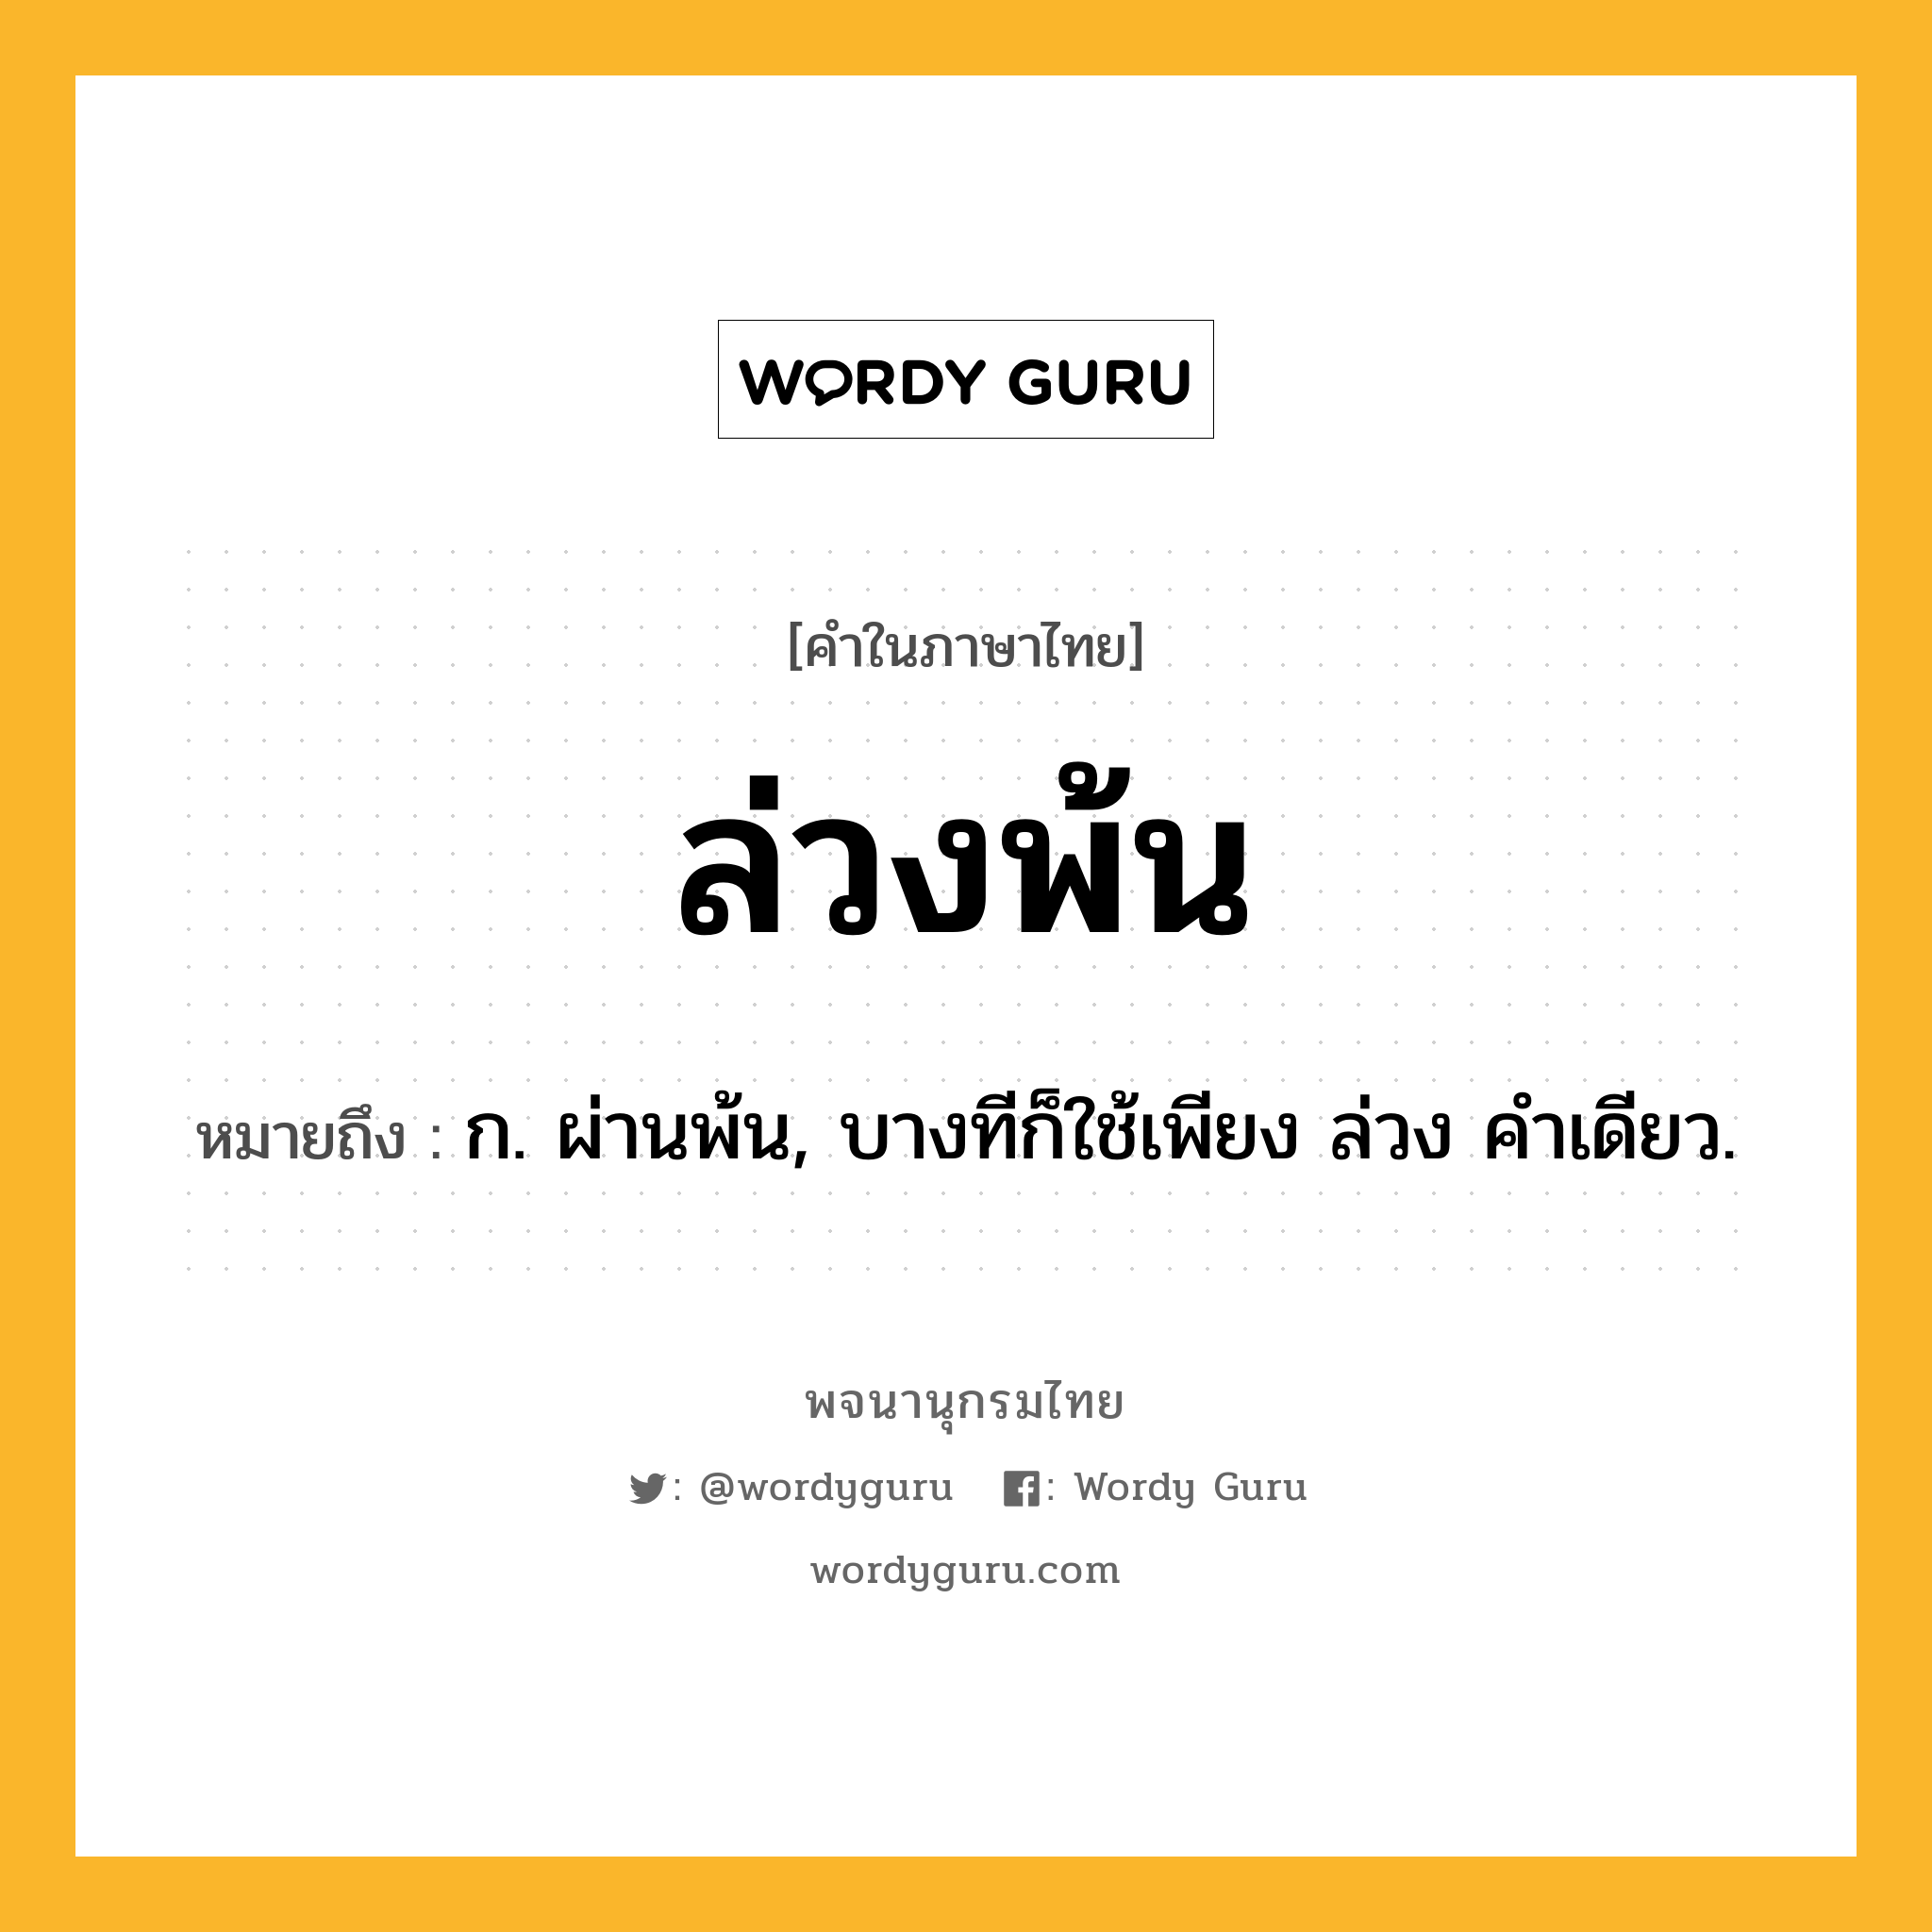 ล่วงพ้น ความหมาย หมายถึงอะไร?, คำในภาษาไทย ล่วงพ้น หมายถึง ก. ผ่านพ้น, บางทีก็ใช้เพียง ล่วง คําเดียว.